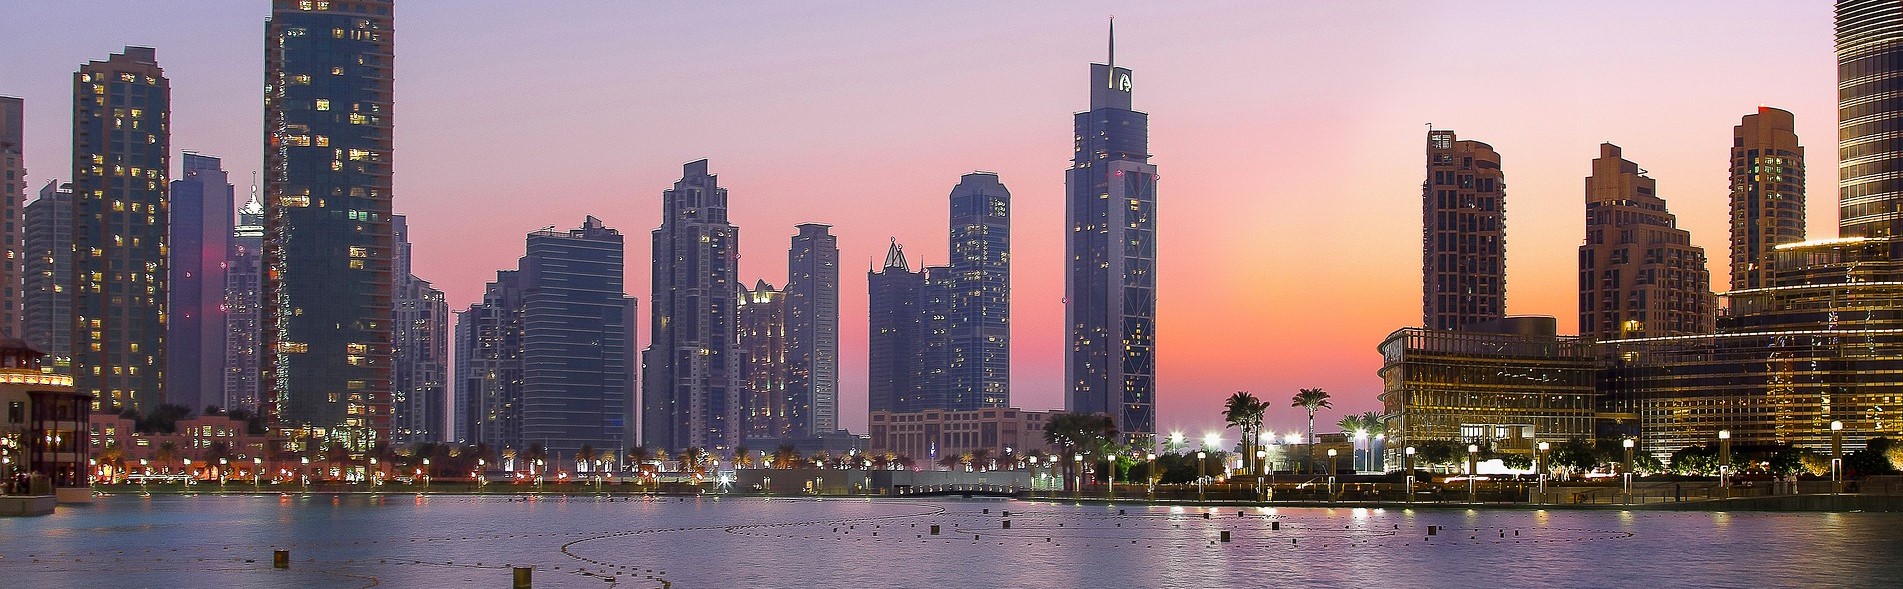 Dubai REVIEW|ドバイ お客様の声